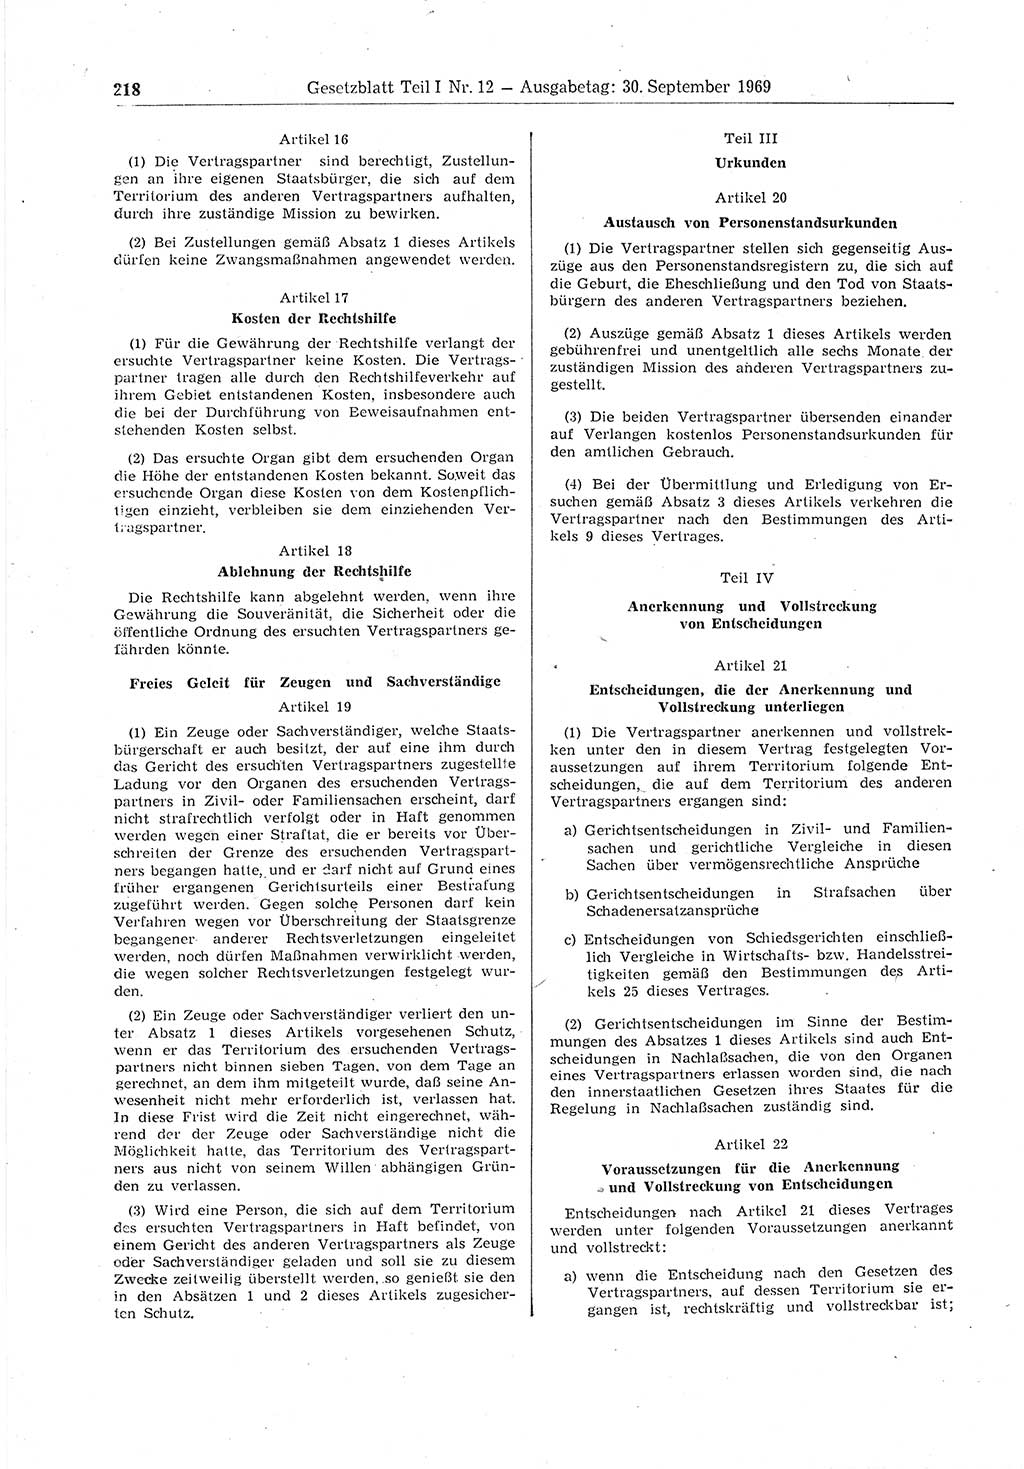 Gesetzblatt (GBl.) der Deutschen Demokratischen Republik (DDR) Teil Ⅰ 1969, Seite 218 (GBl. DDR Ⅰ 1969, S. 218)